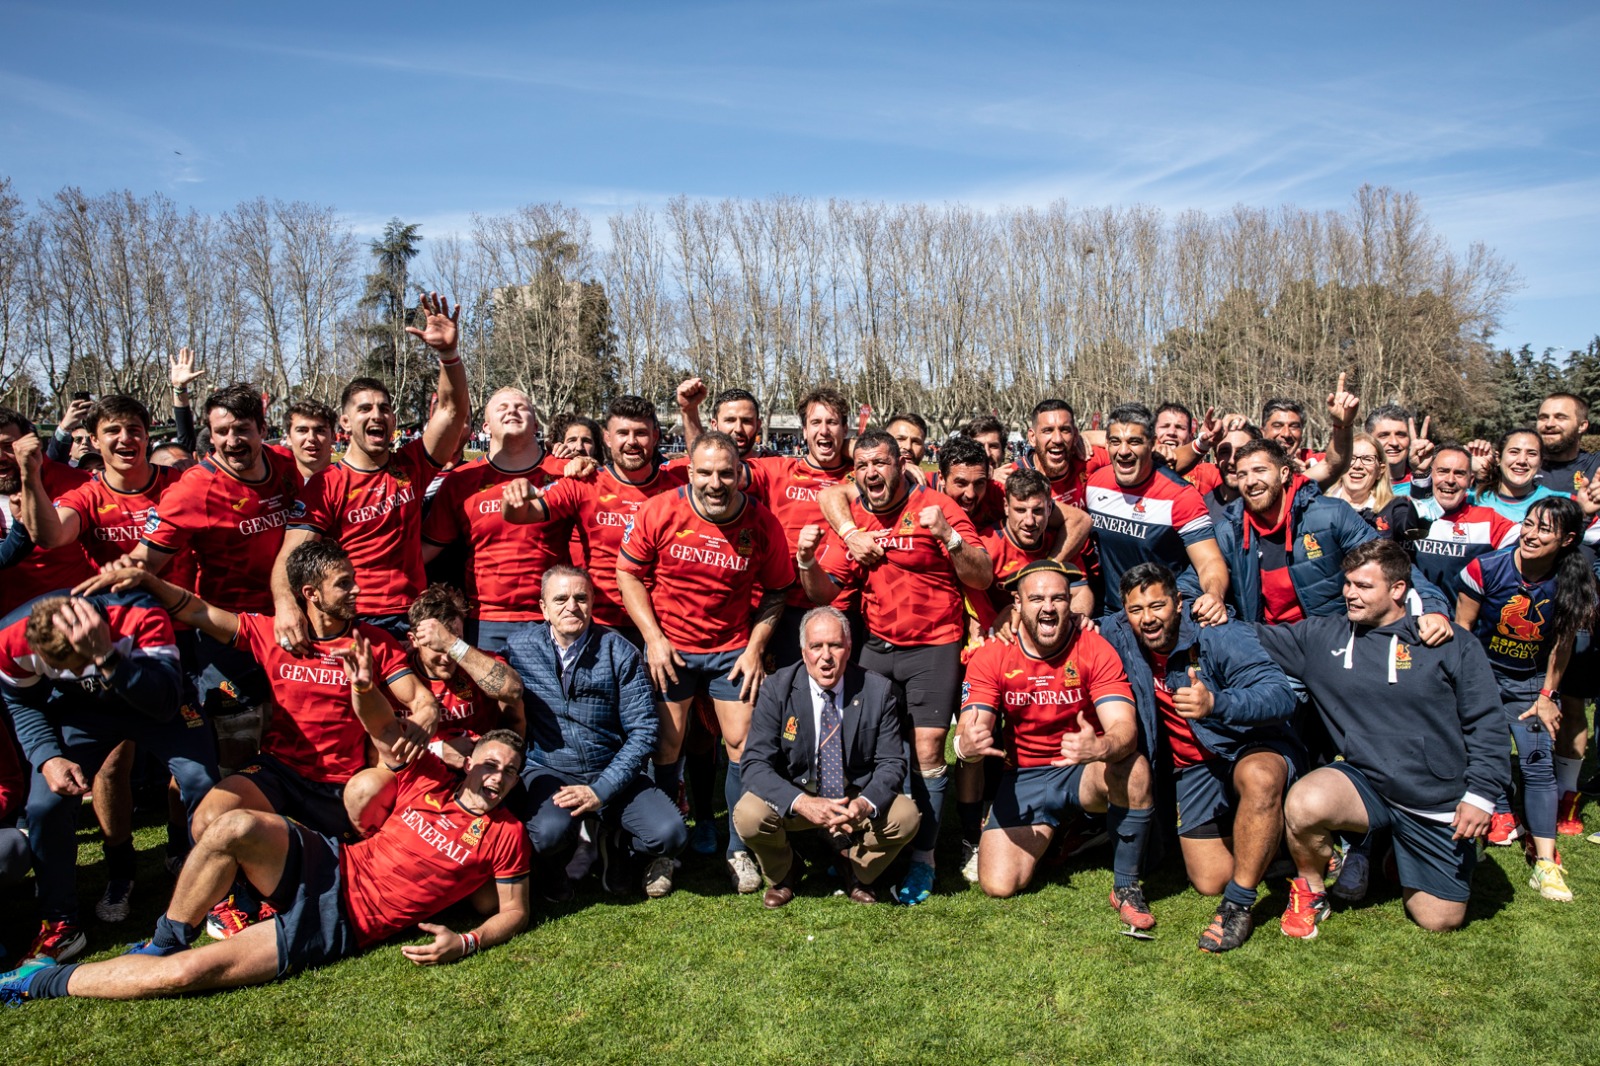 Jugar un Mundial y un título europeo, grandes hits del rugby español en 2022